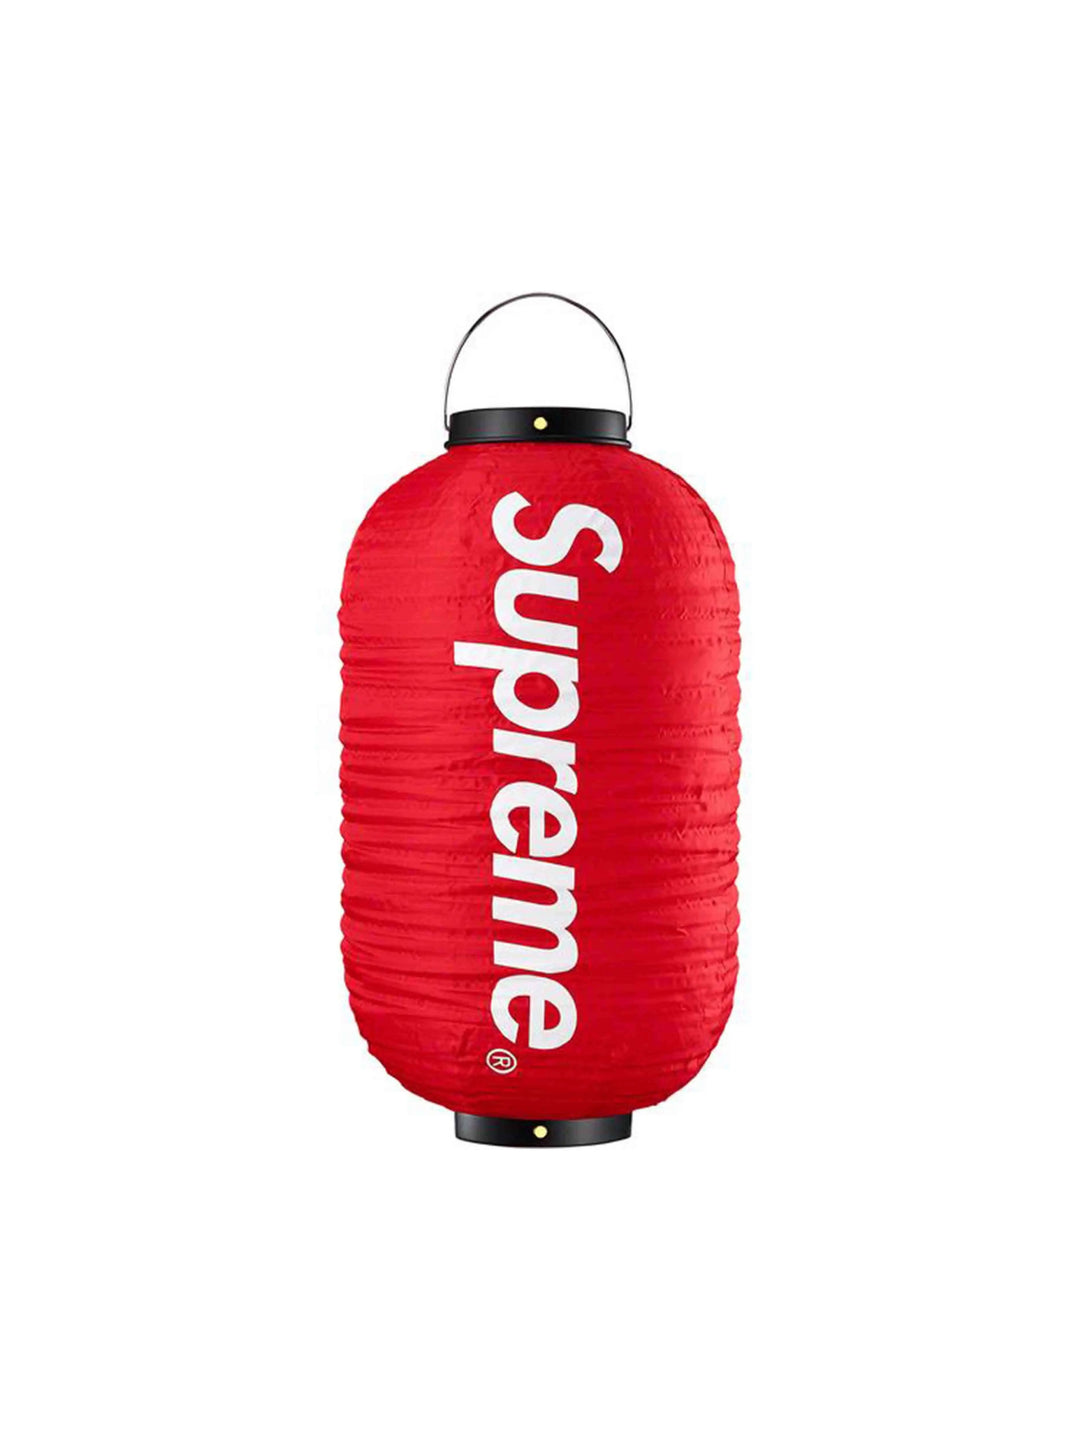 Supreme Hanging Lantern Red Supreme